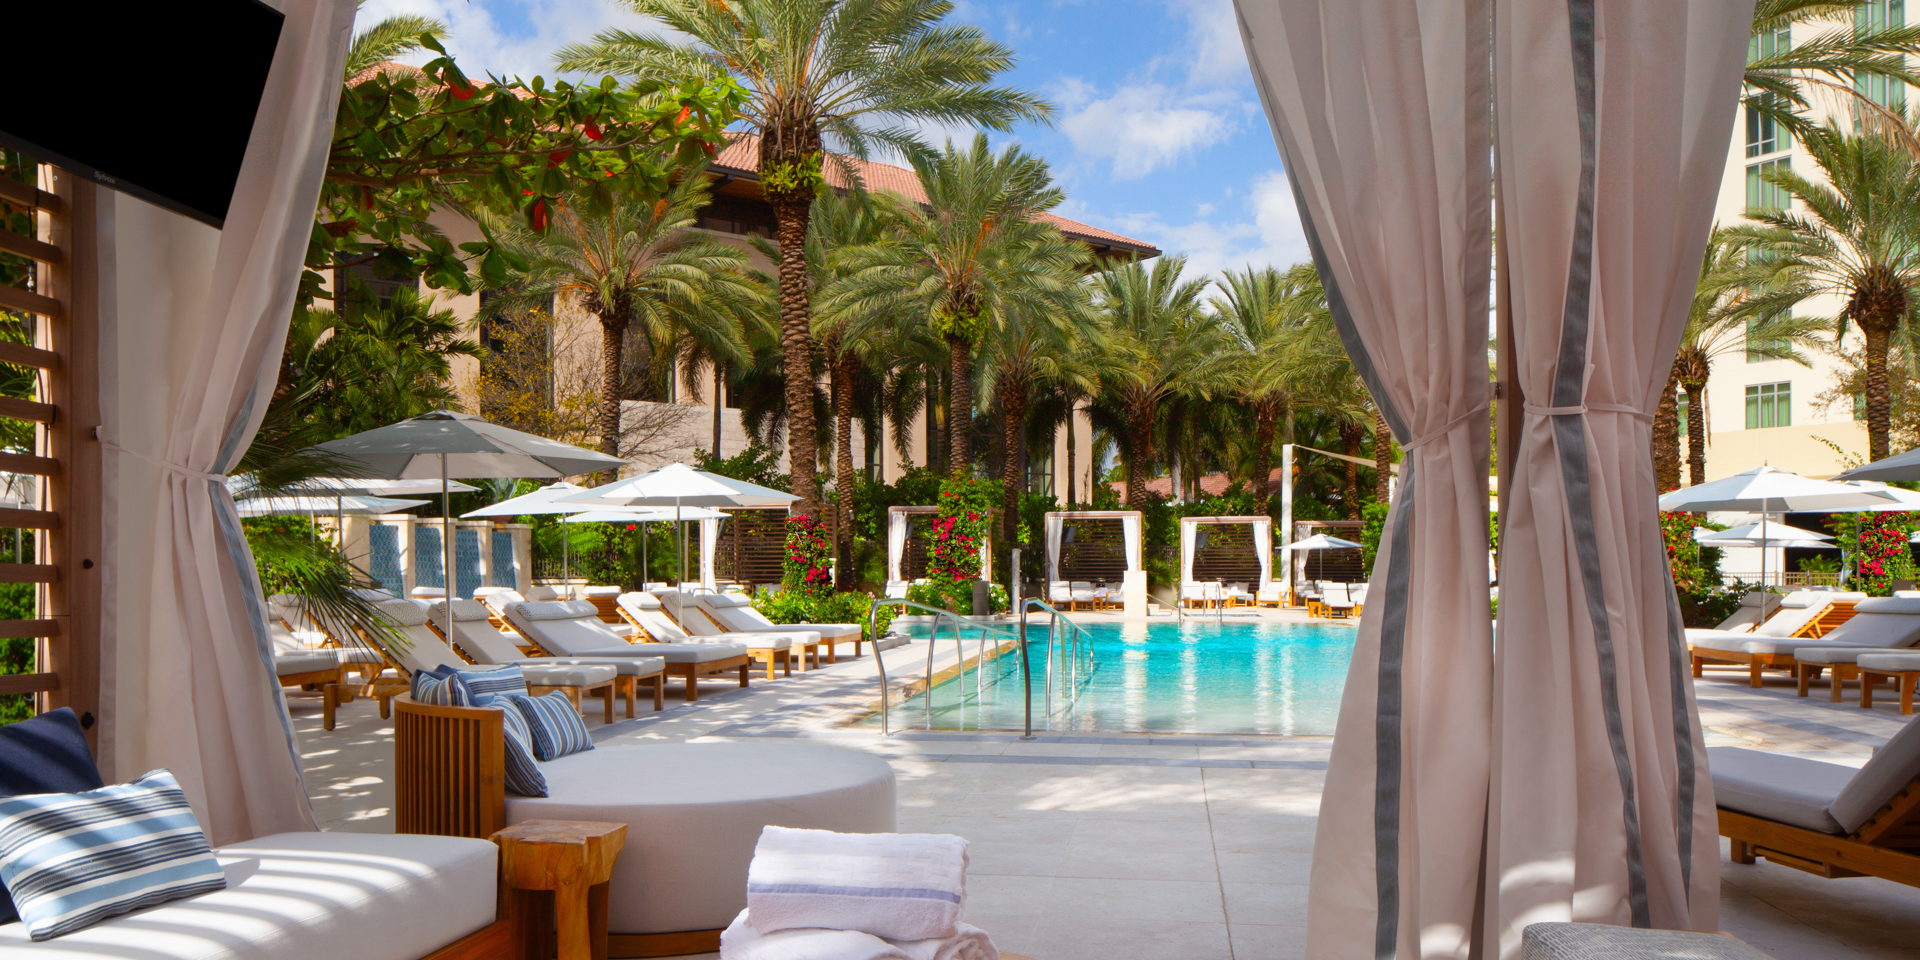 Hilton West Palm Beach cabana and pool